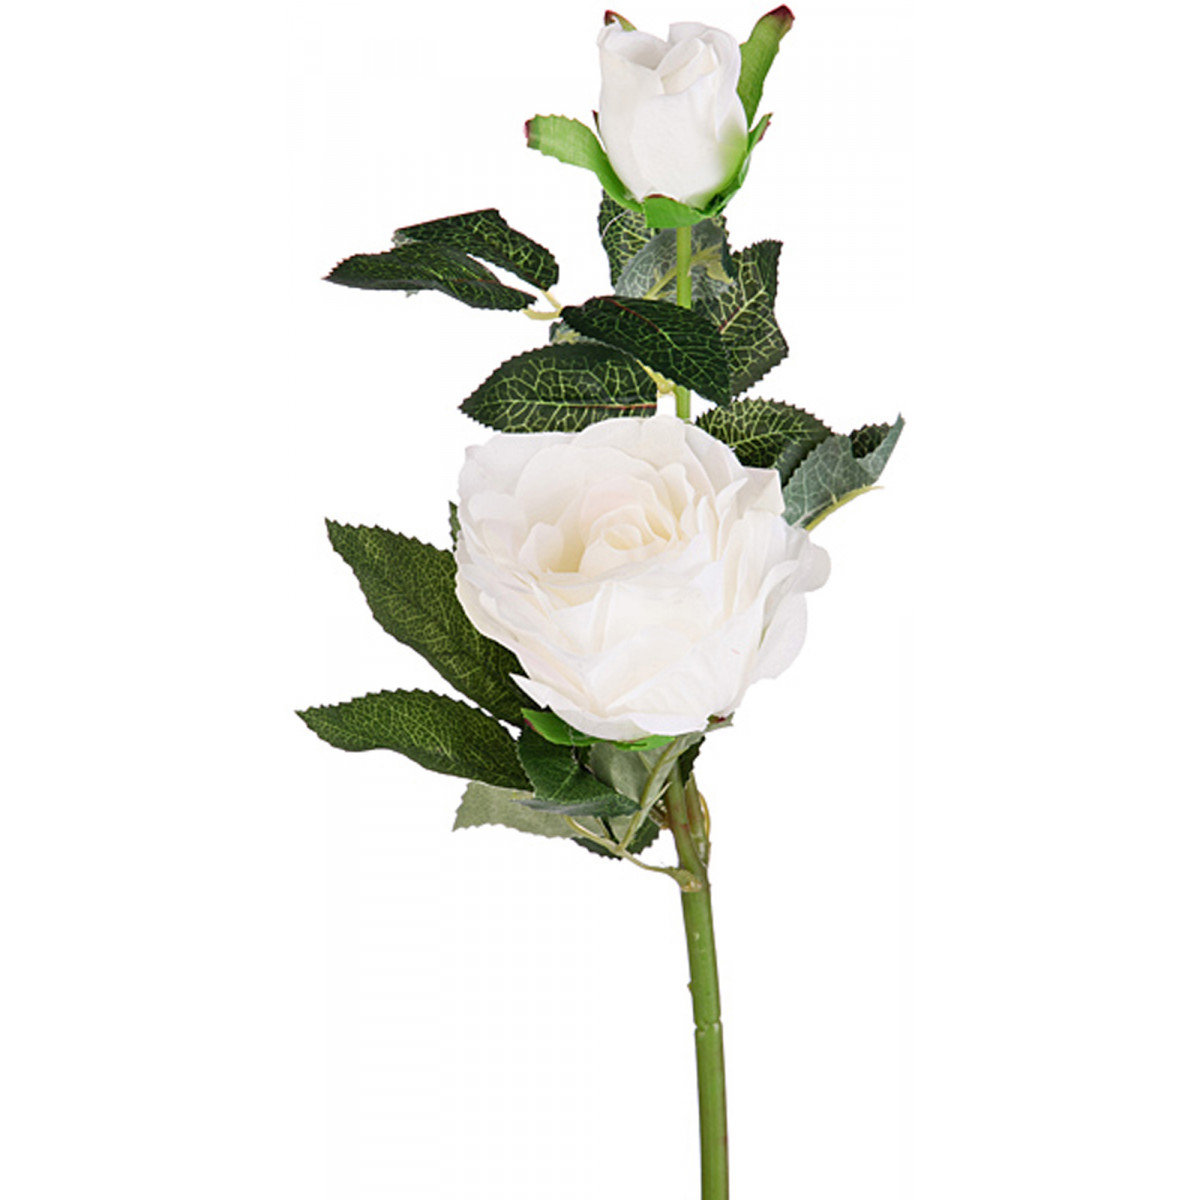 Искусственный цветок Josslyn  (42 см), размер 42 см arm302013 Искусственный цветок Josslyn  (42 см) - фото 1